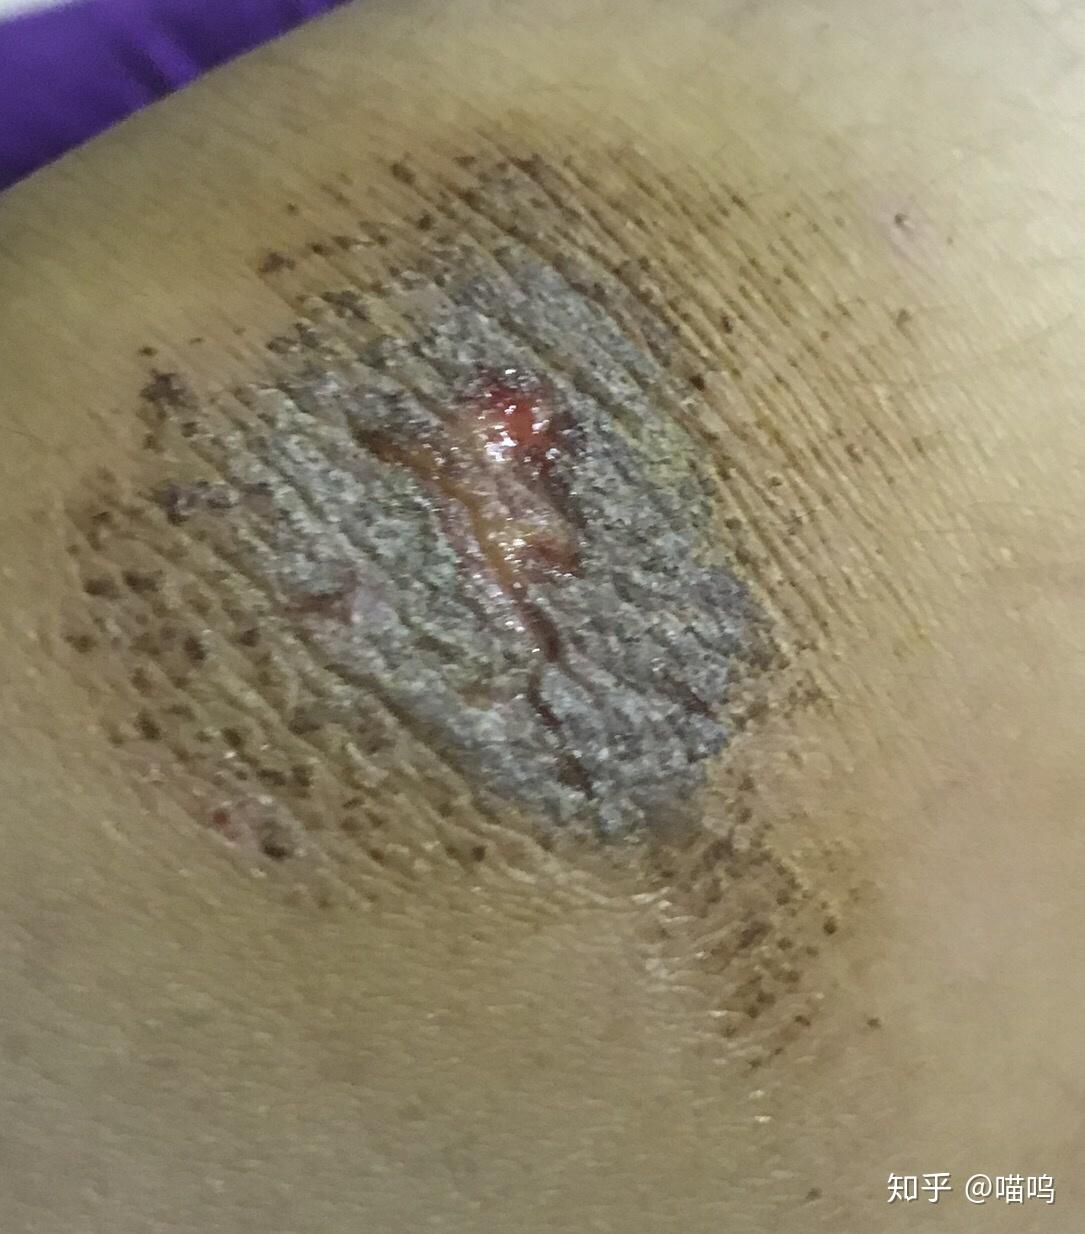 膝盖摔伤,抹了碘伏结痂后如何防止留疤?